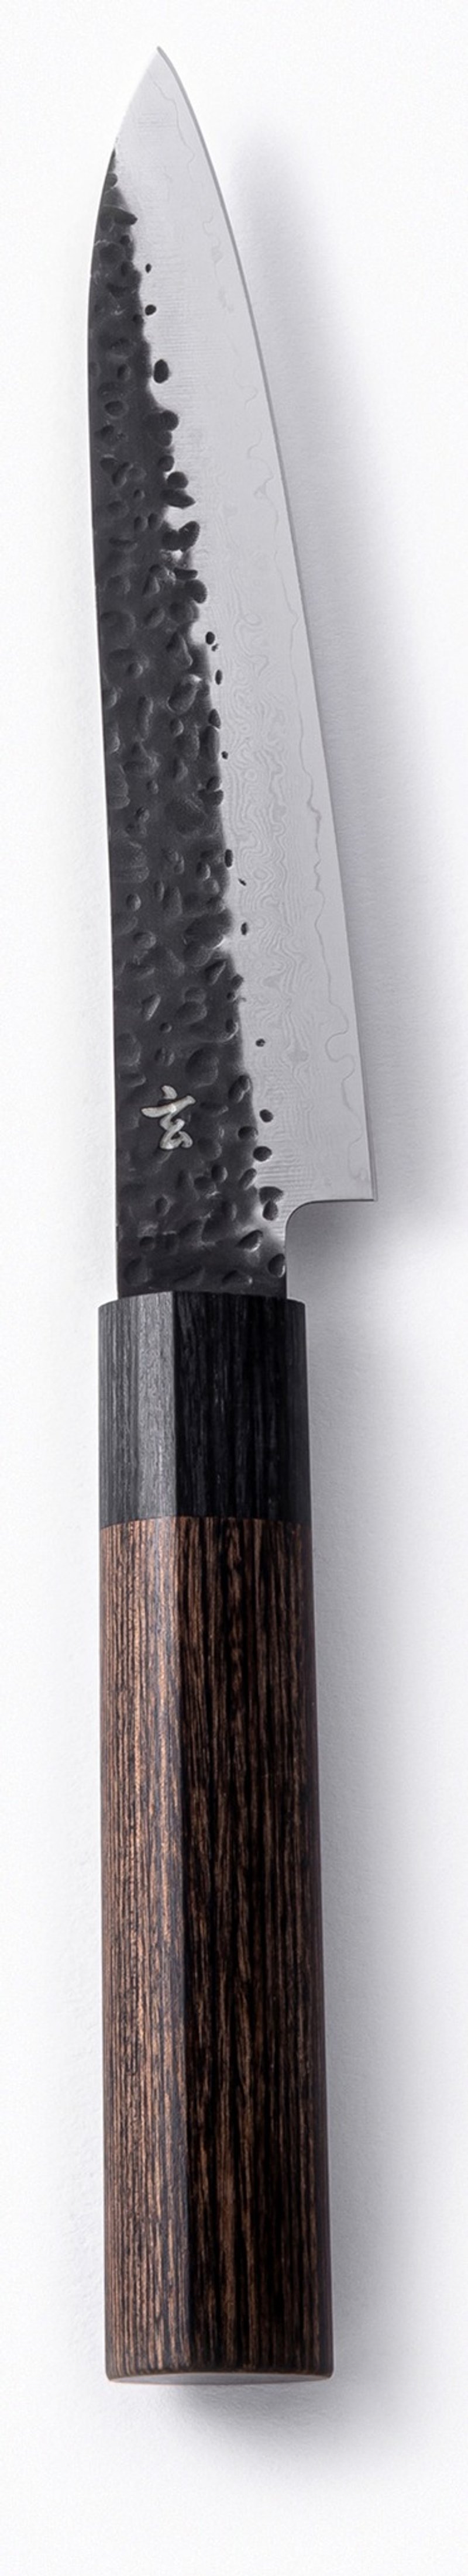 玄 / Petit knife 水果刀 - 菜刀/刀架 - 其他金属 